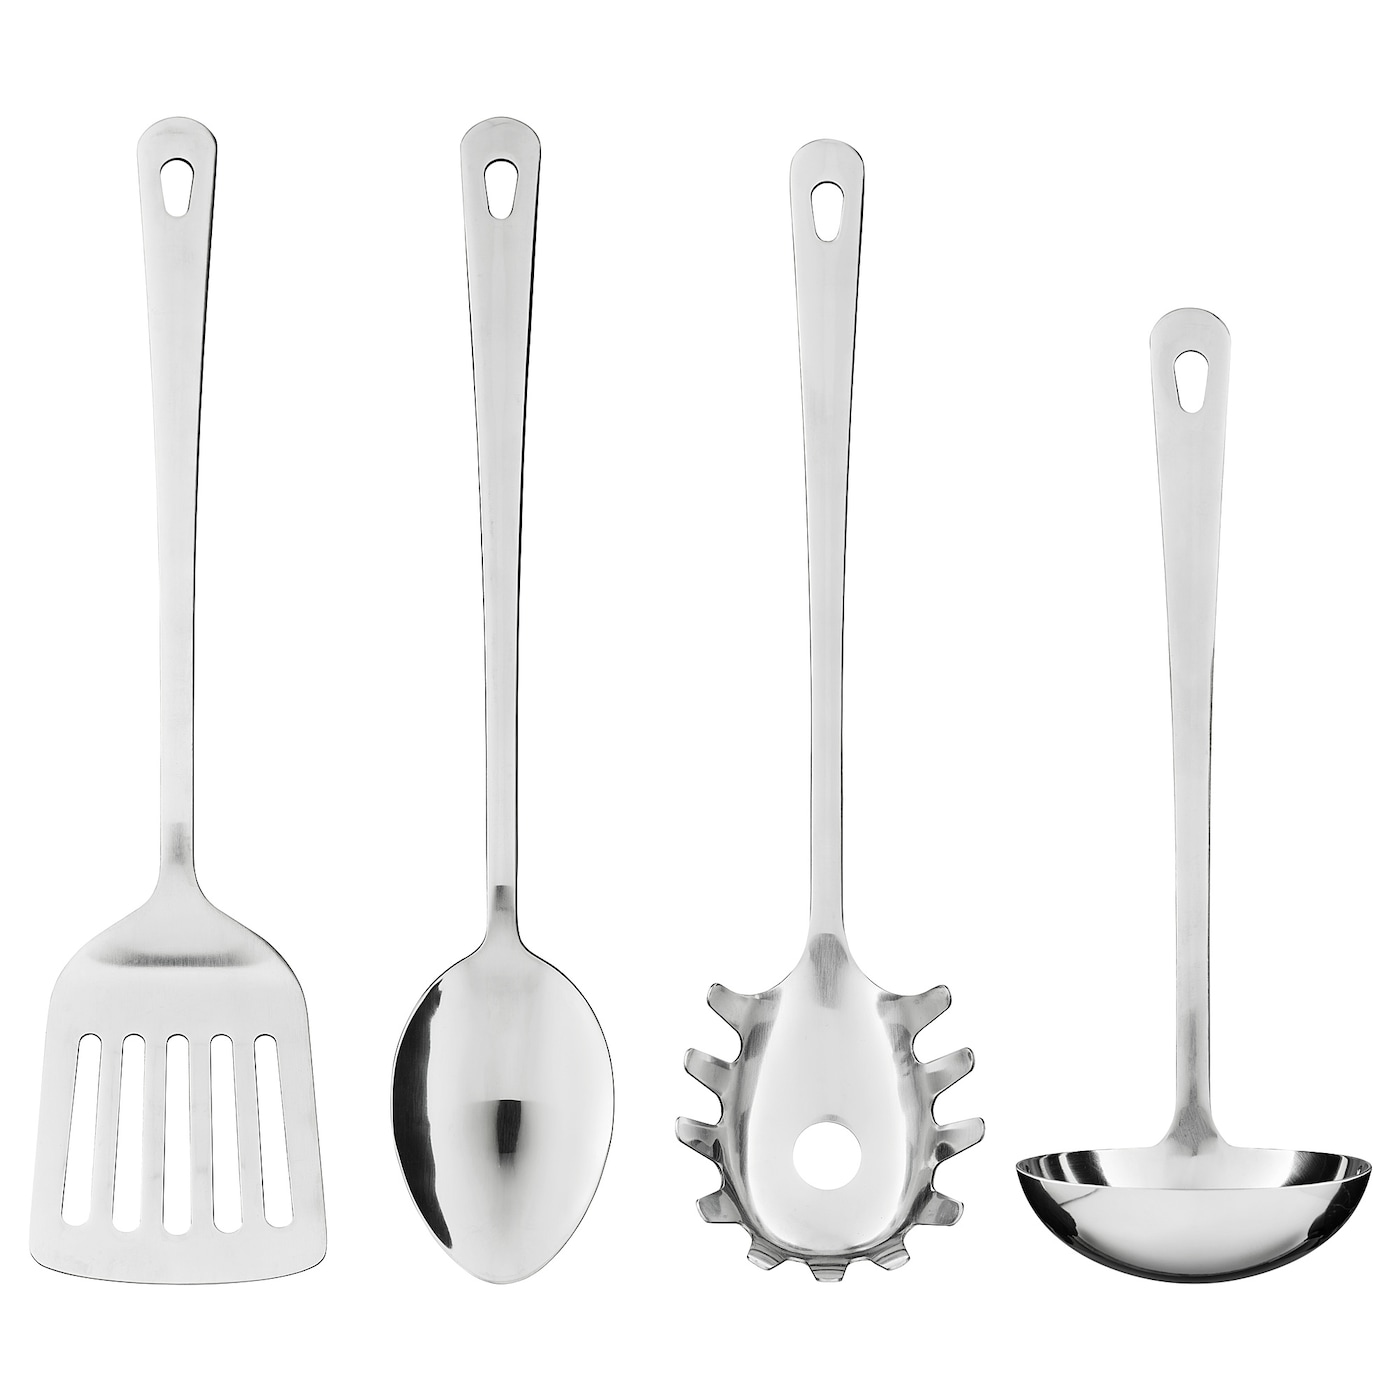 GRUNKA ГРУНКА Кухонные принадлежности,4 предмета, нержавеющ сталь IKEA